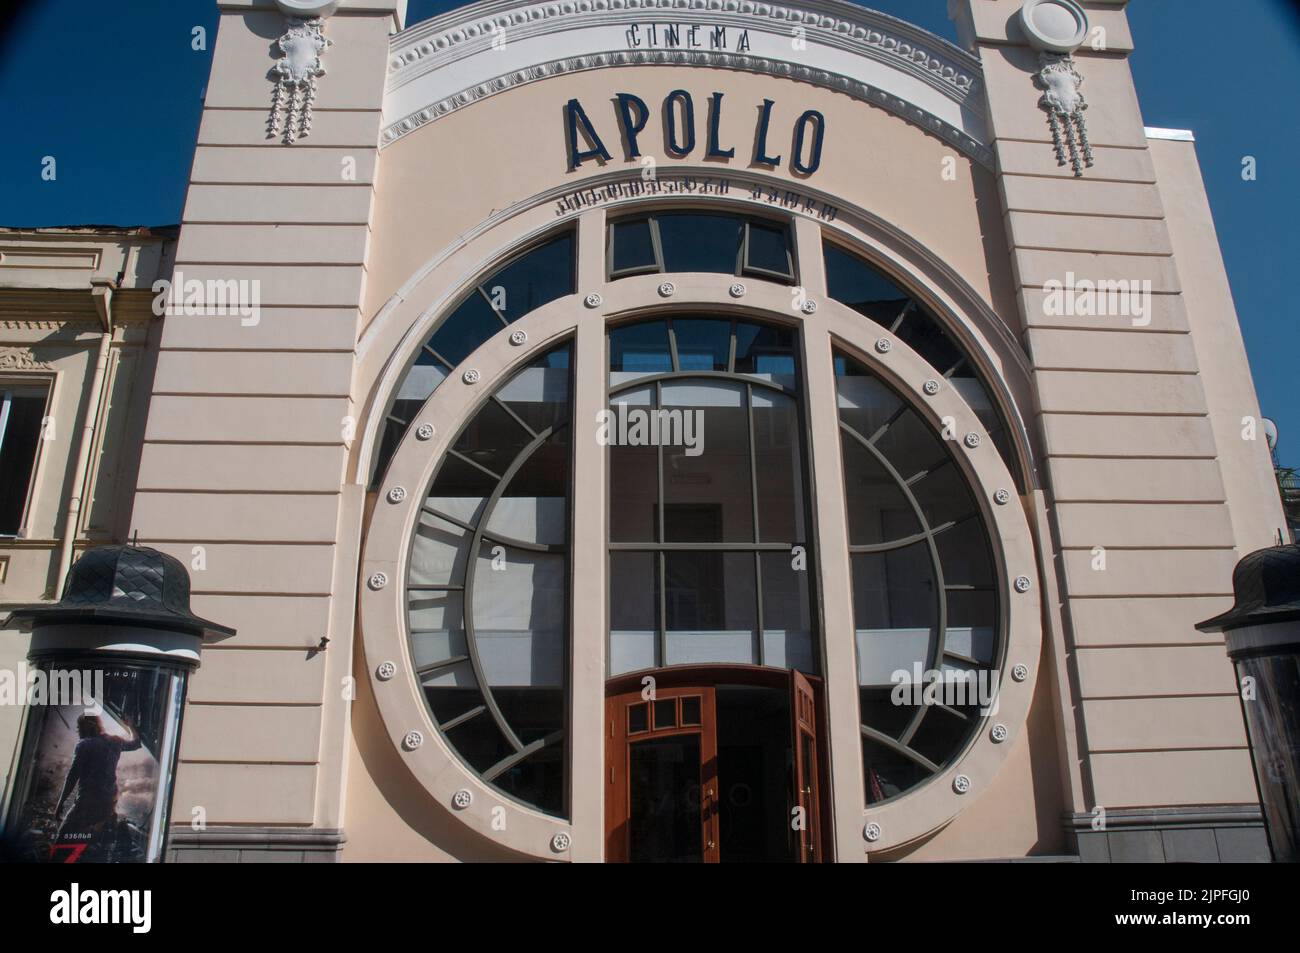 Apollo Cinema (1910) in Batumi, a port city on the Black Sea in modern-day Georgia Stock Photo